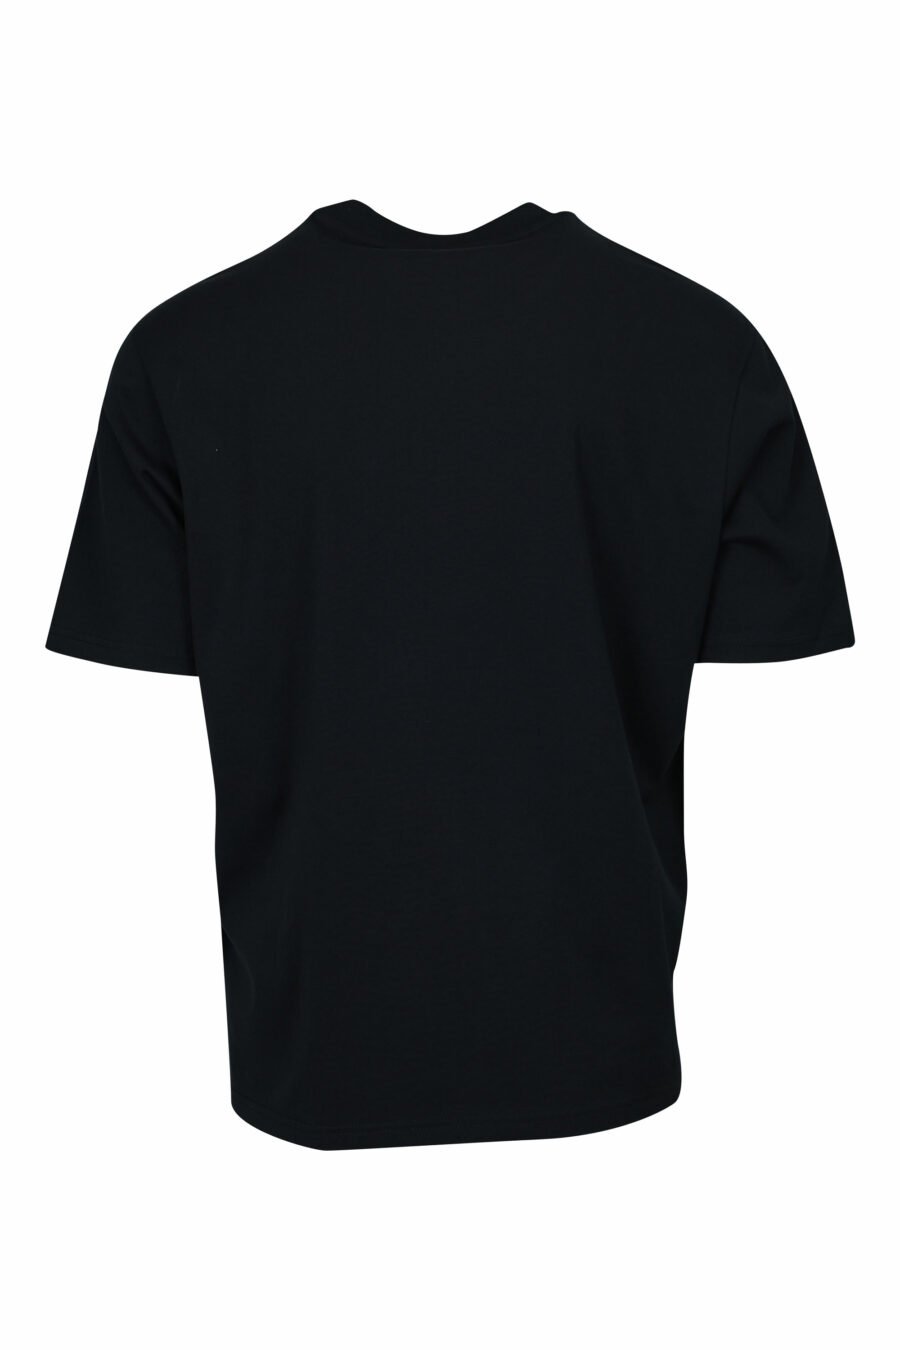 Camiseta negra con estampado hojas y maxilogo "emporio" - 8058947296163 1